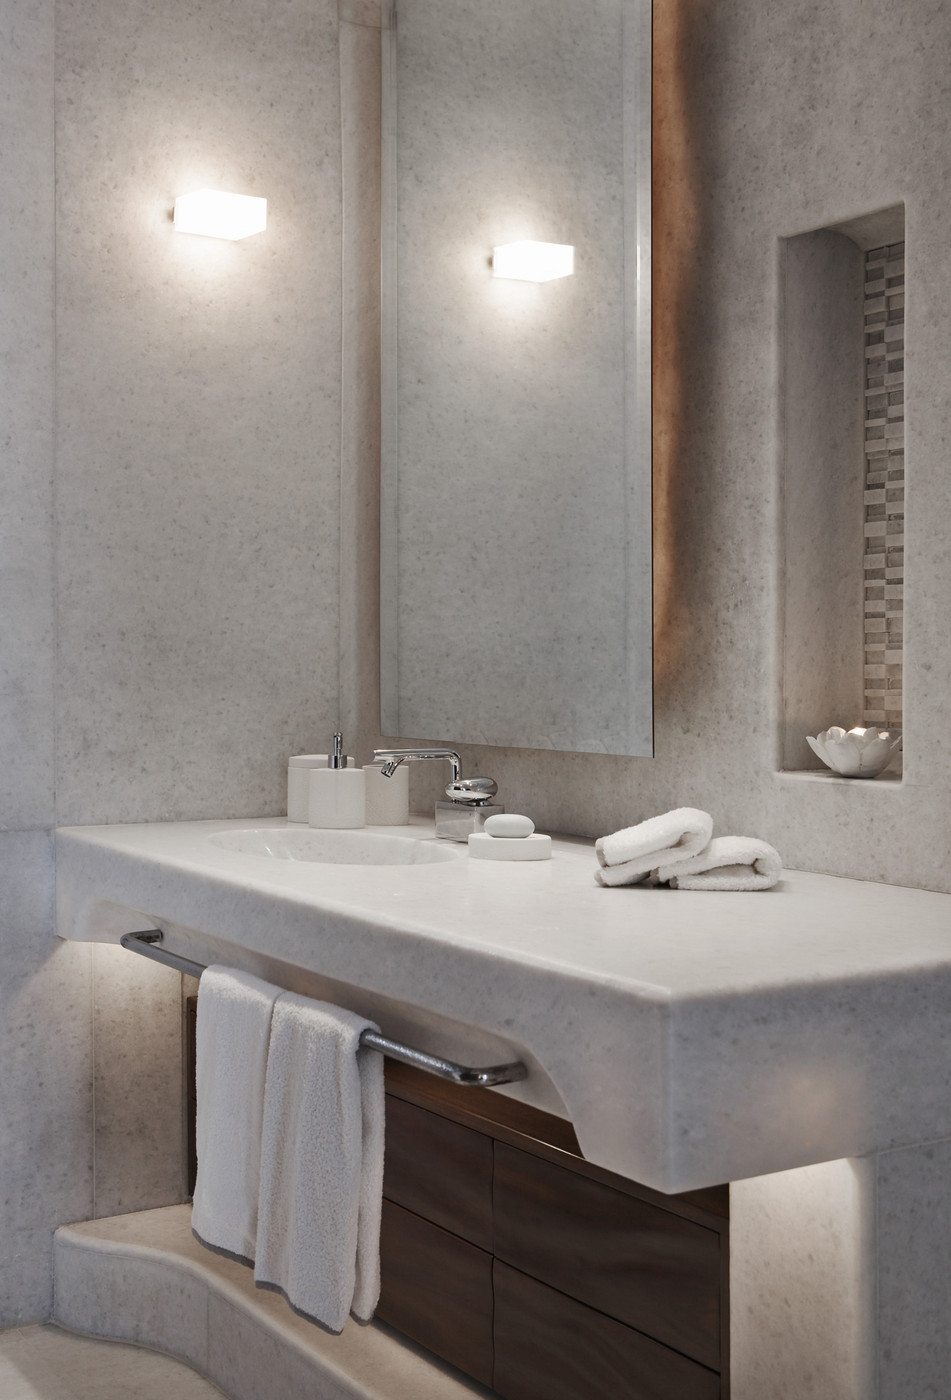 The Luxury Look Of High End Bathroom Vanities